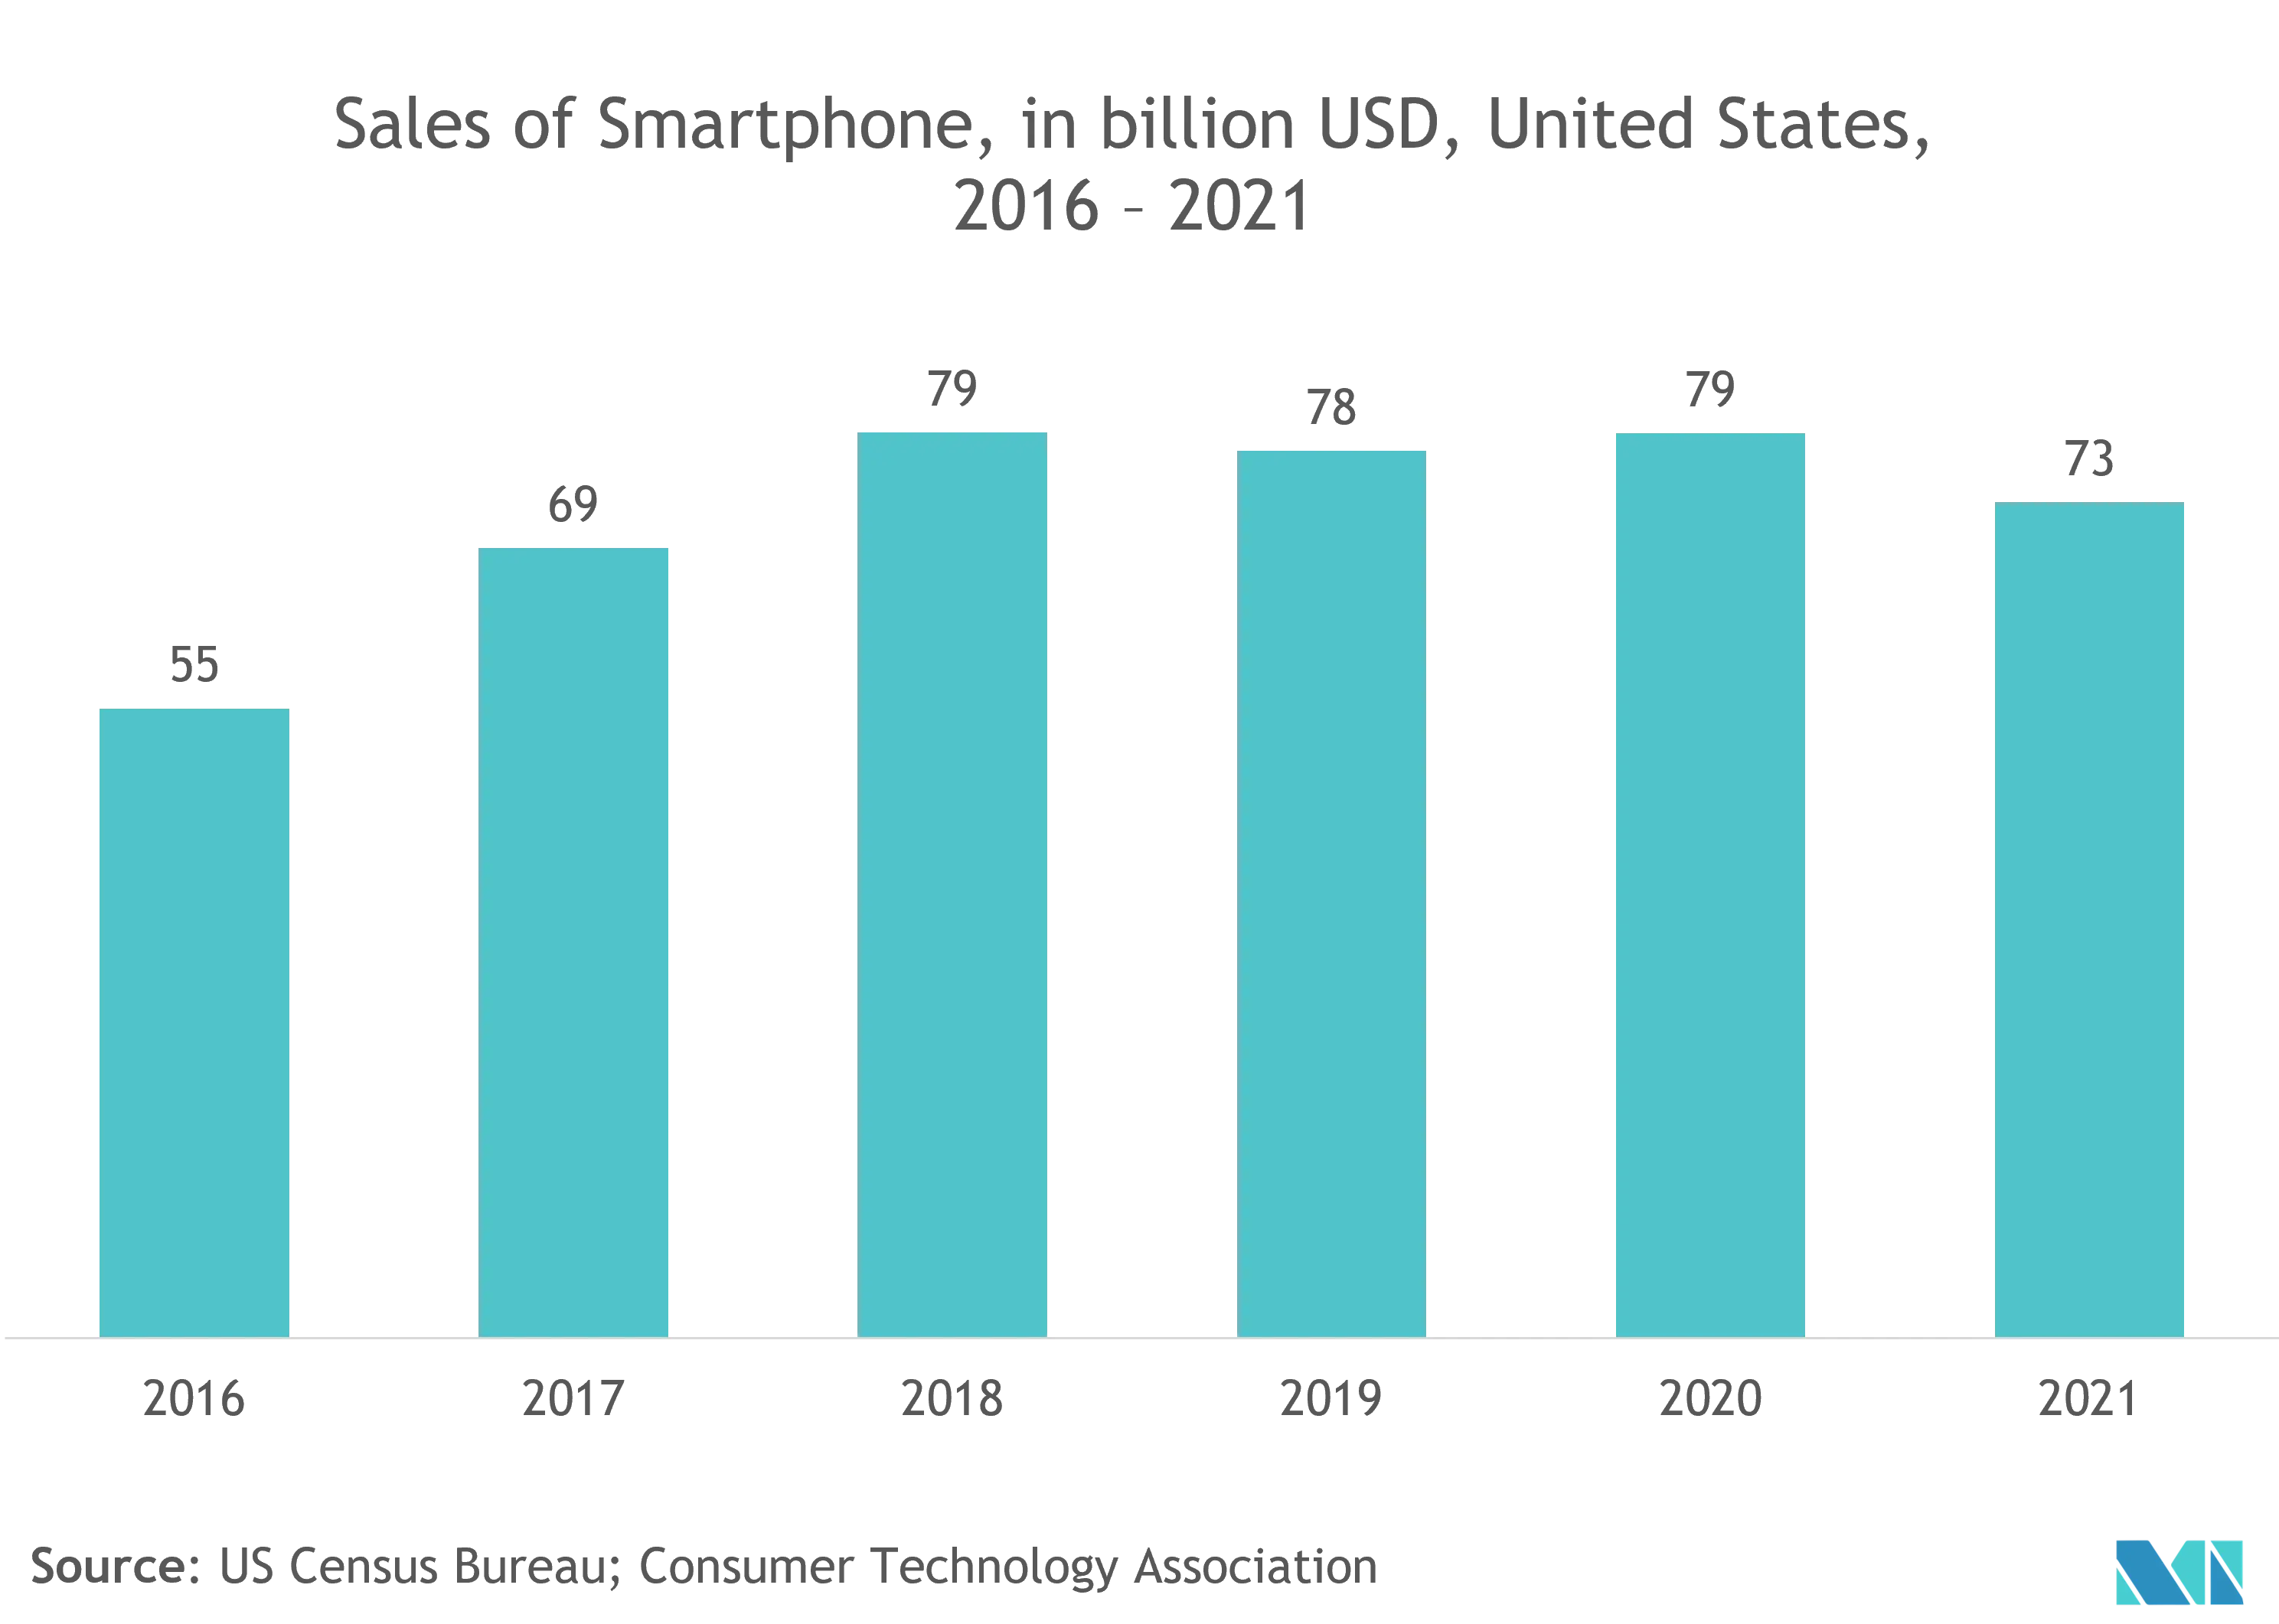 Mercado de chips GNSS Ventas de teléfonos inteligentes, en millones de dólares, Estados Unidos 2016-2021